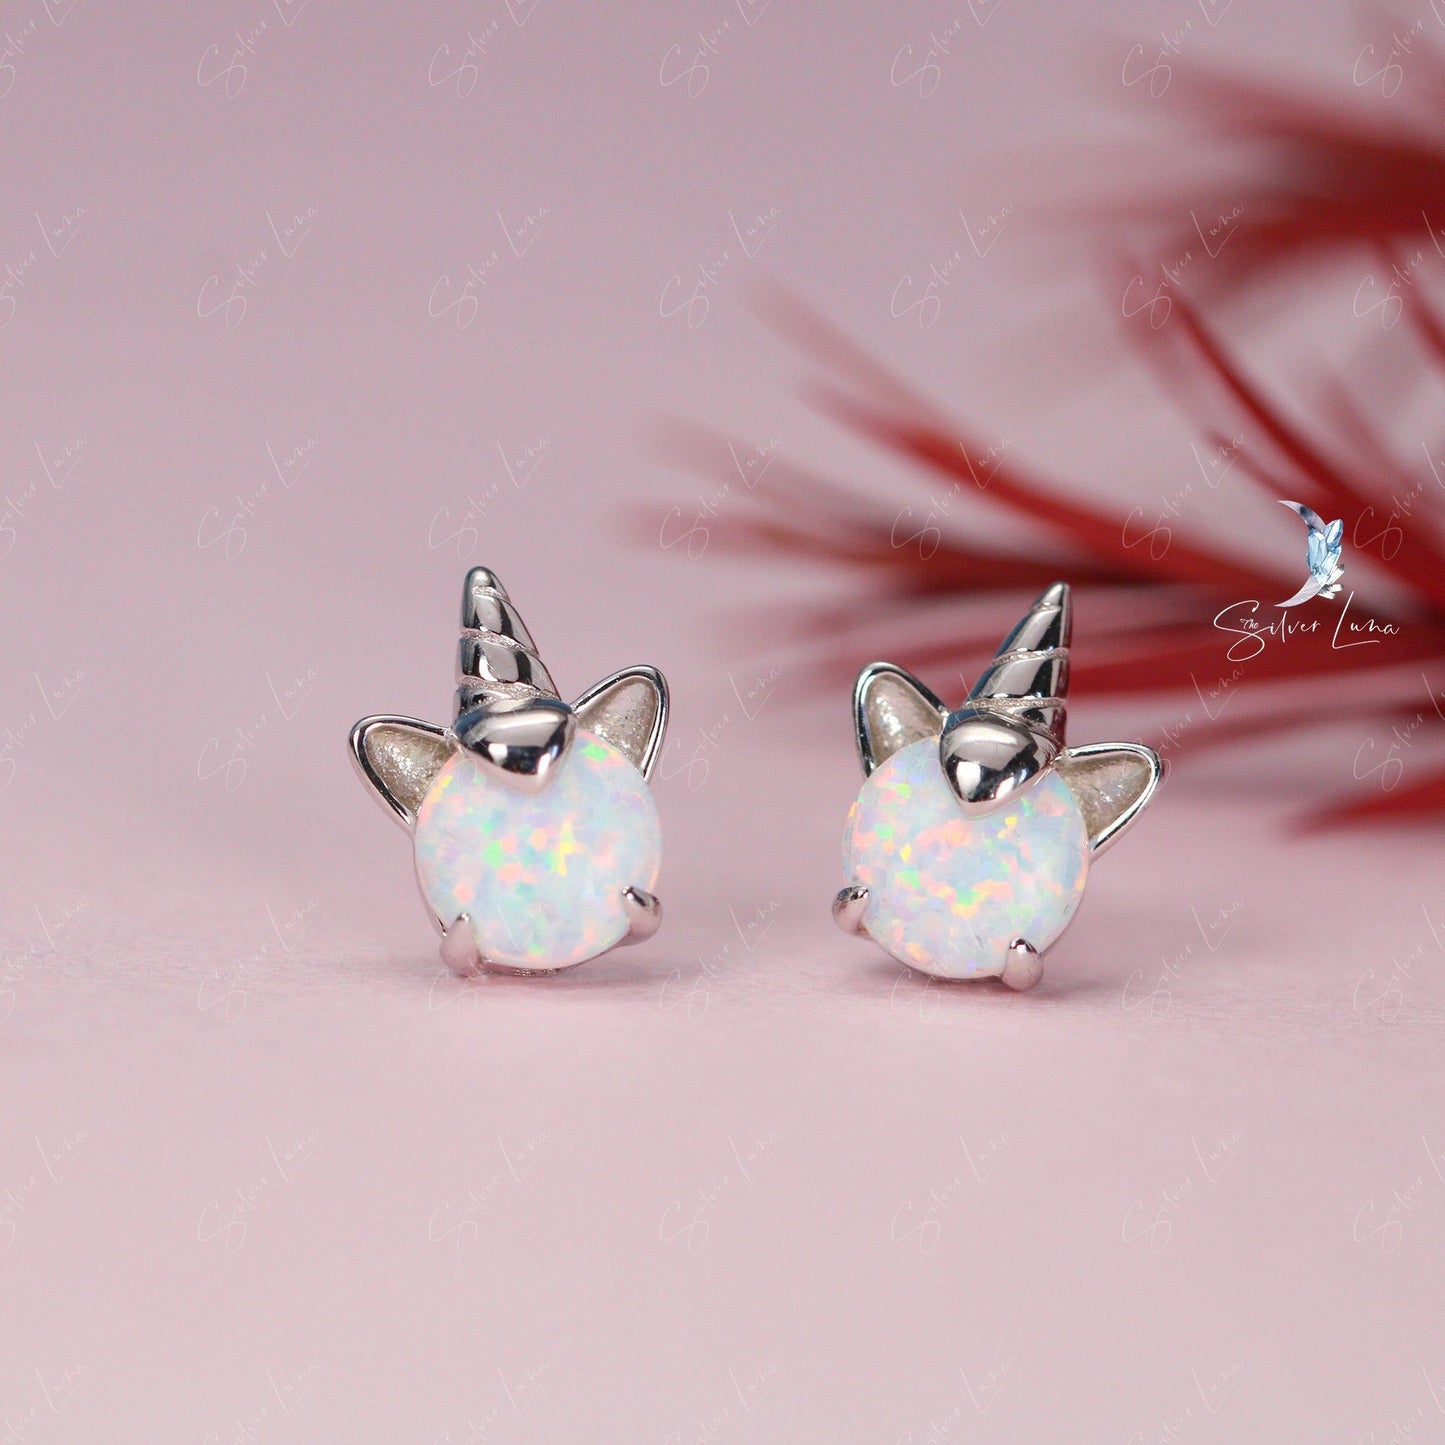 Unicorn opal stone sterling silver stud earrings